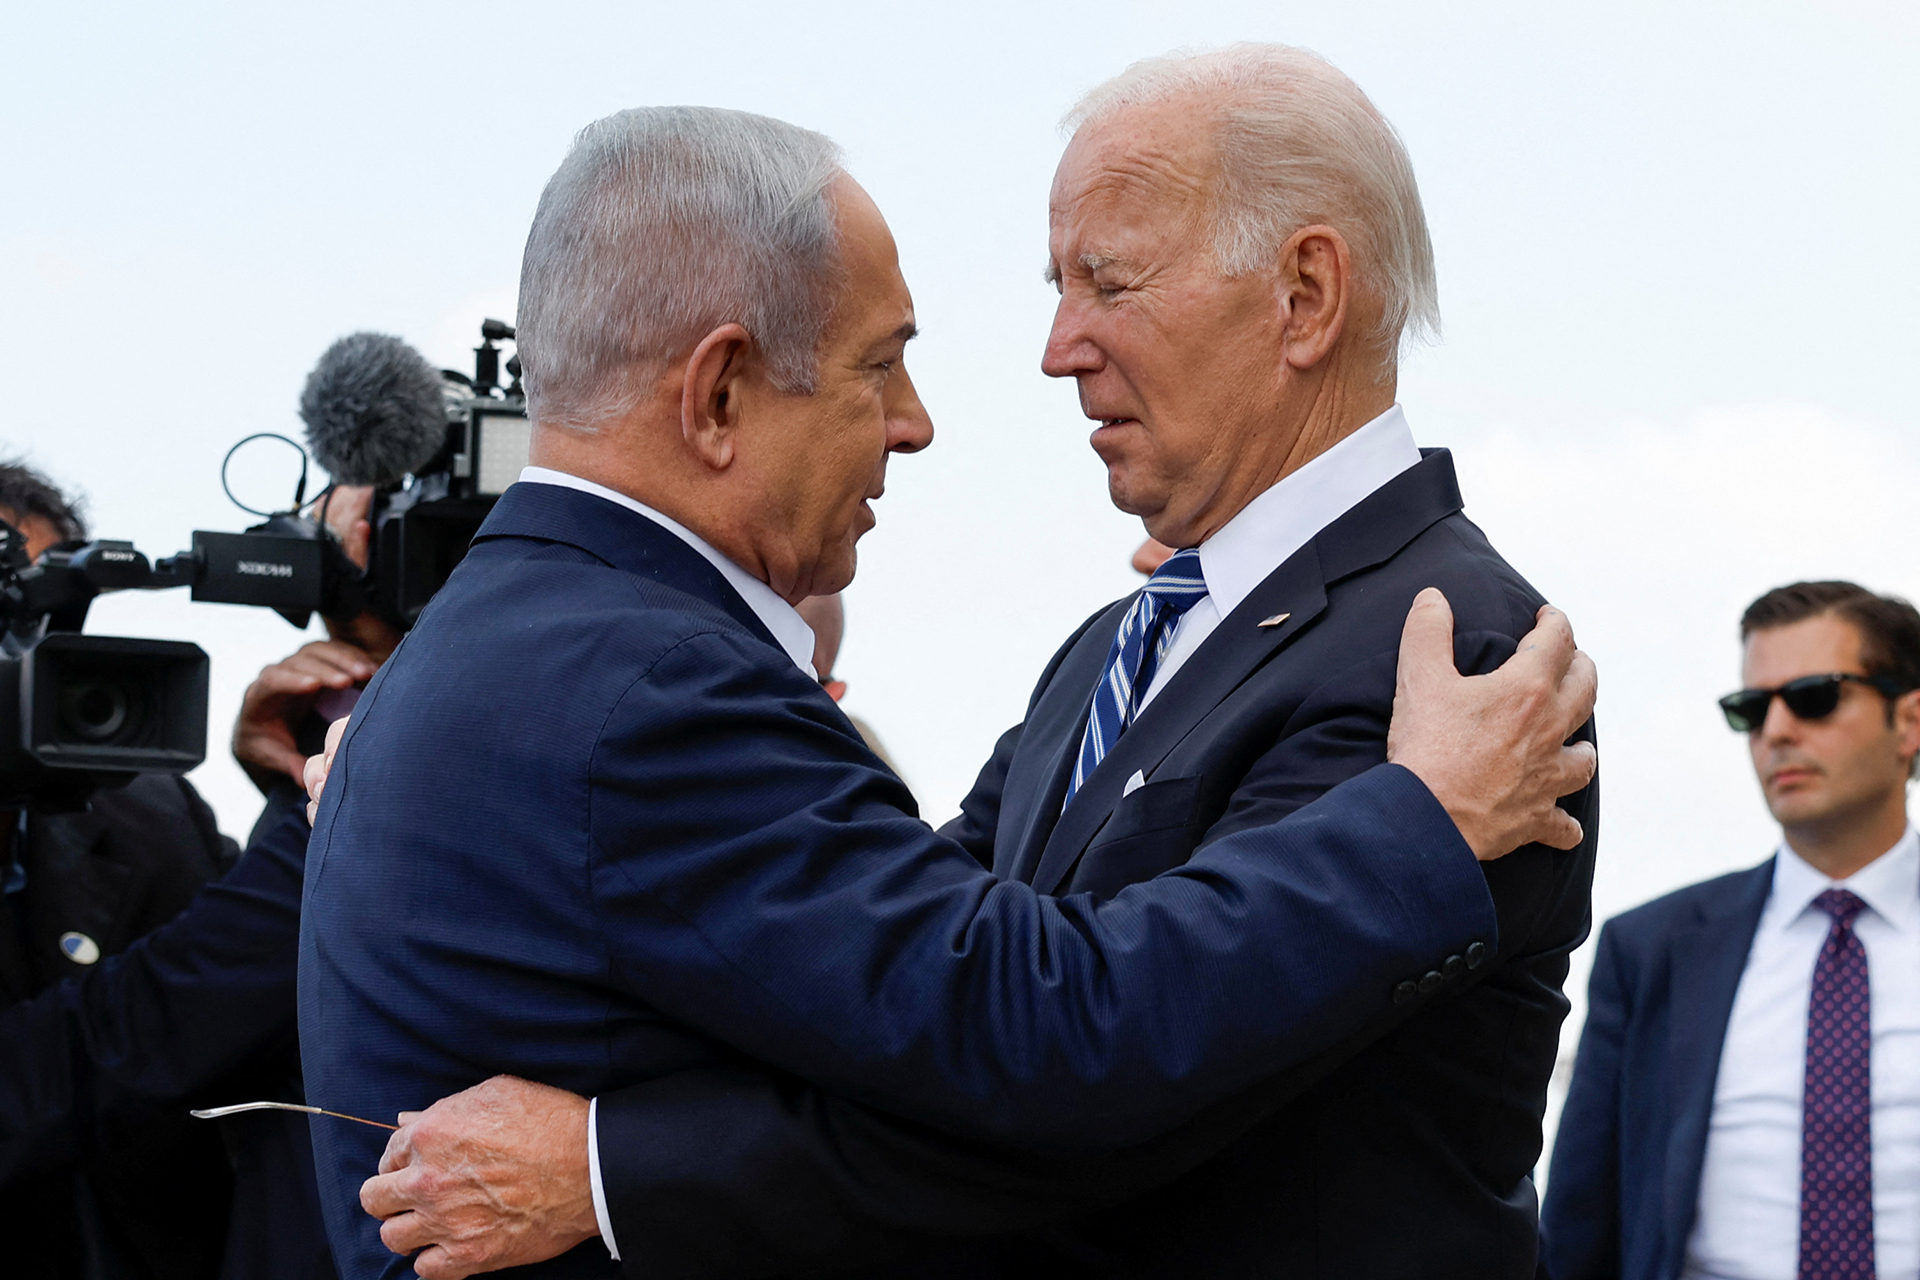 وزيران إسرائيليان يردان على بايدن: لن نسمح بإقامة دولة فلسطينية | أخبار – البوكس نيوز